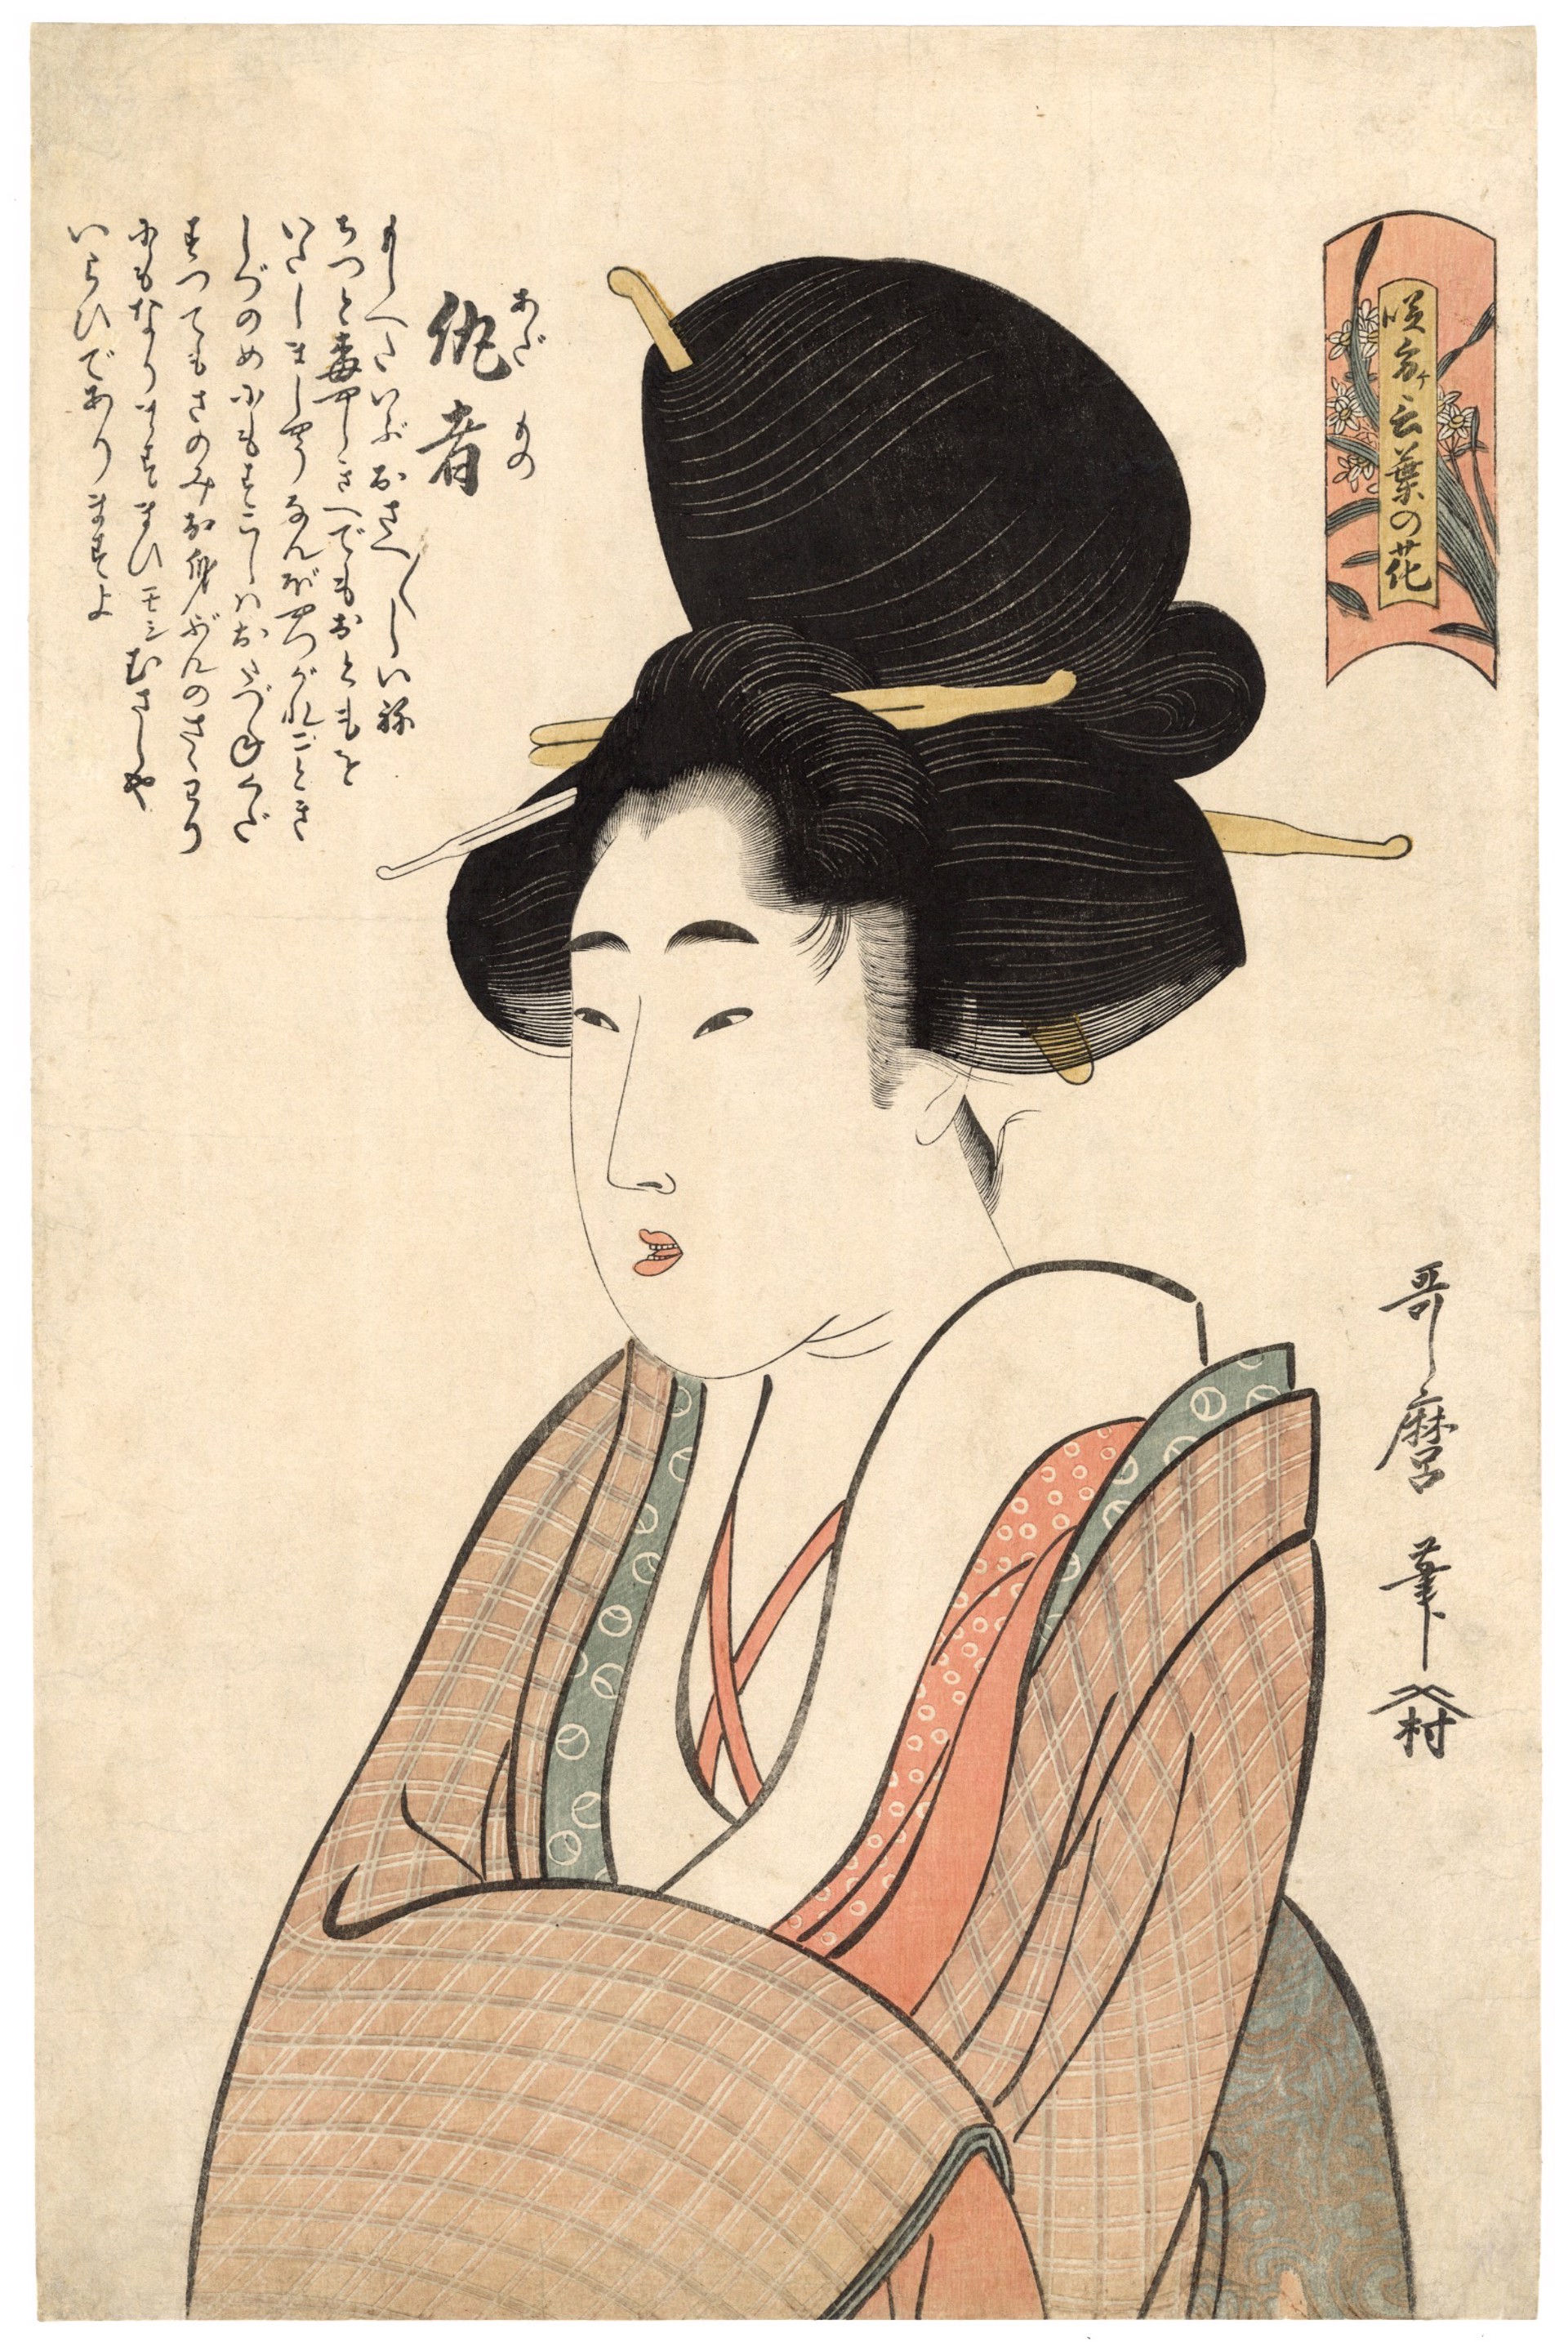 Adamoro (The Flashy One) by Utamaro